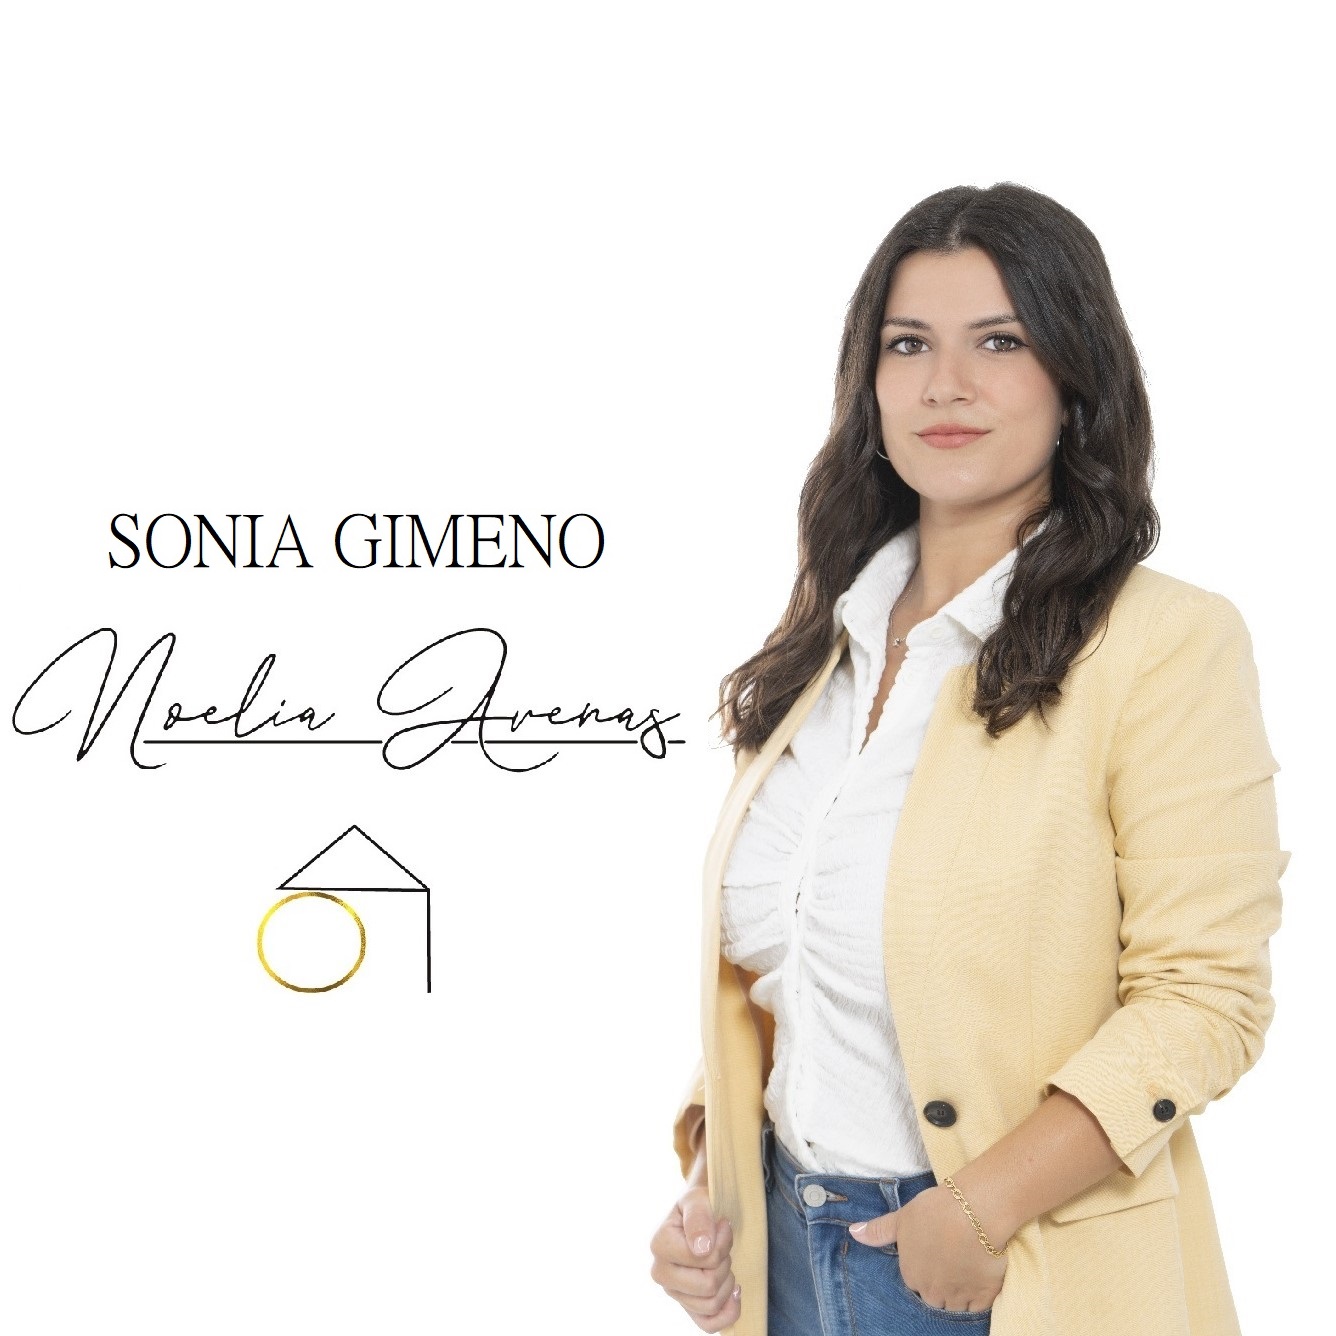 Sonia Gimeno